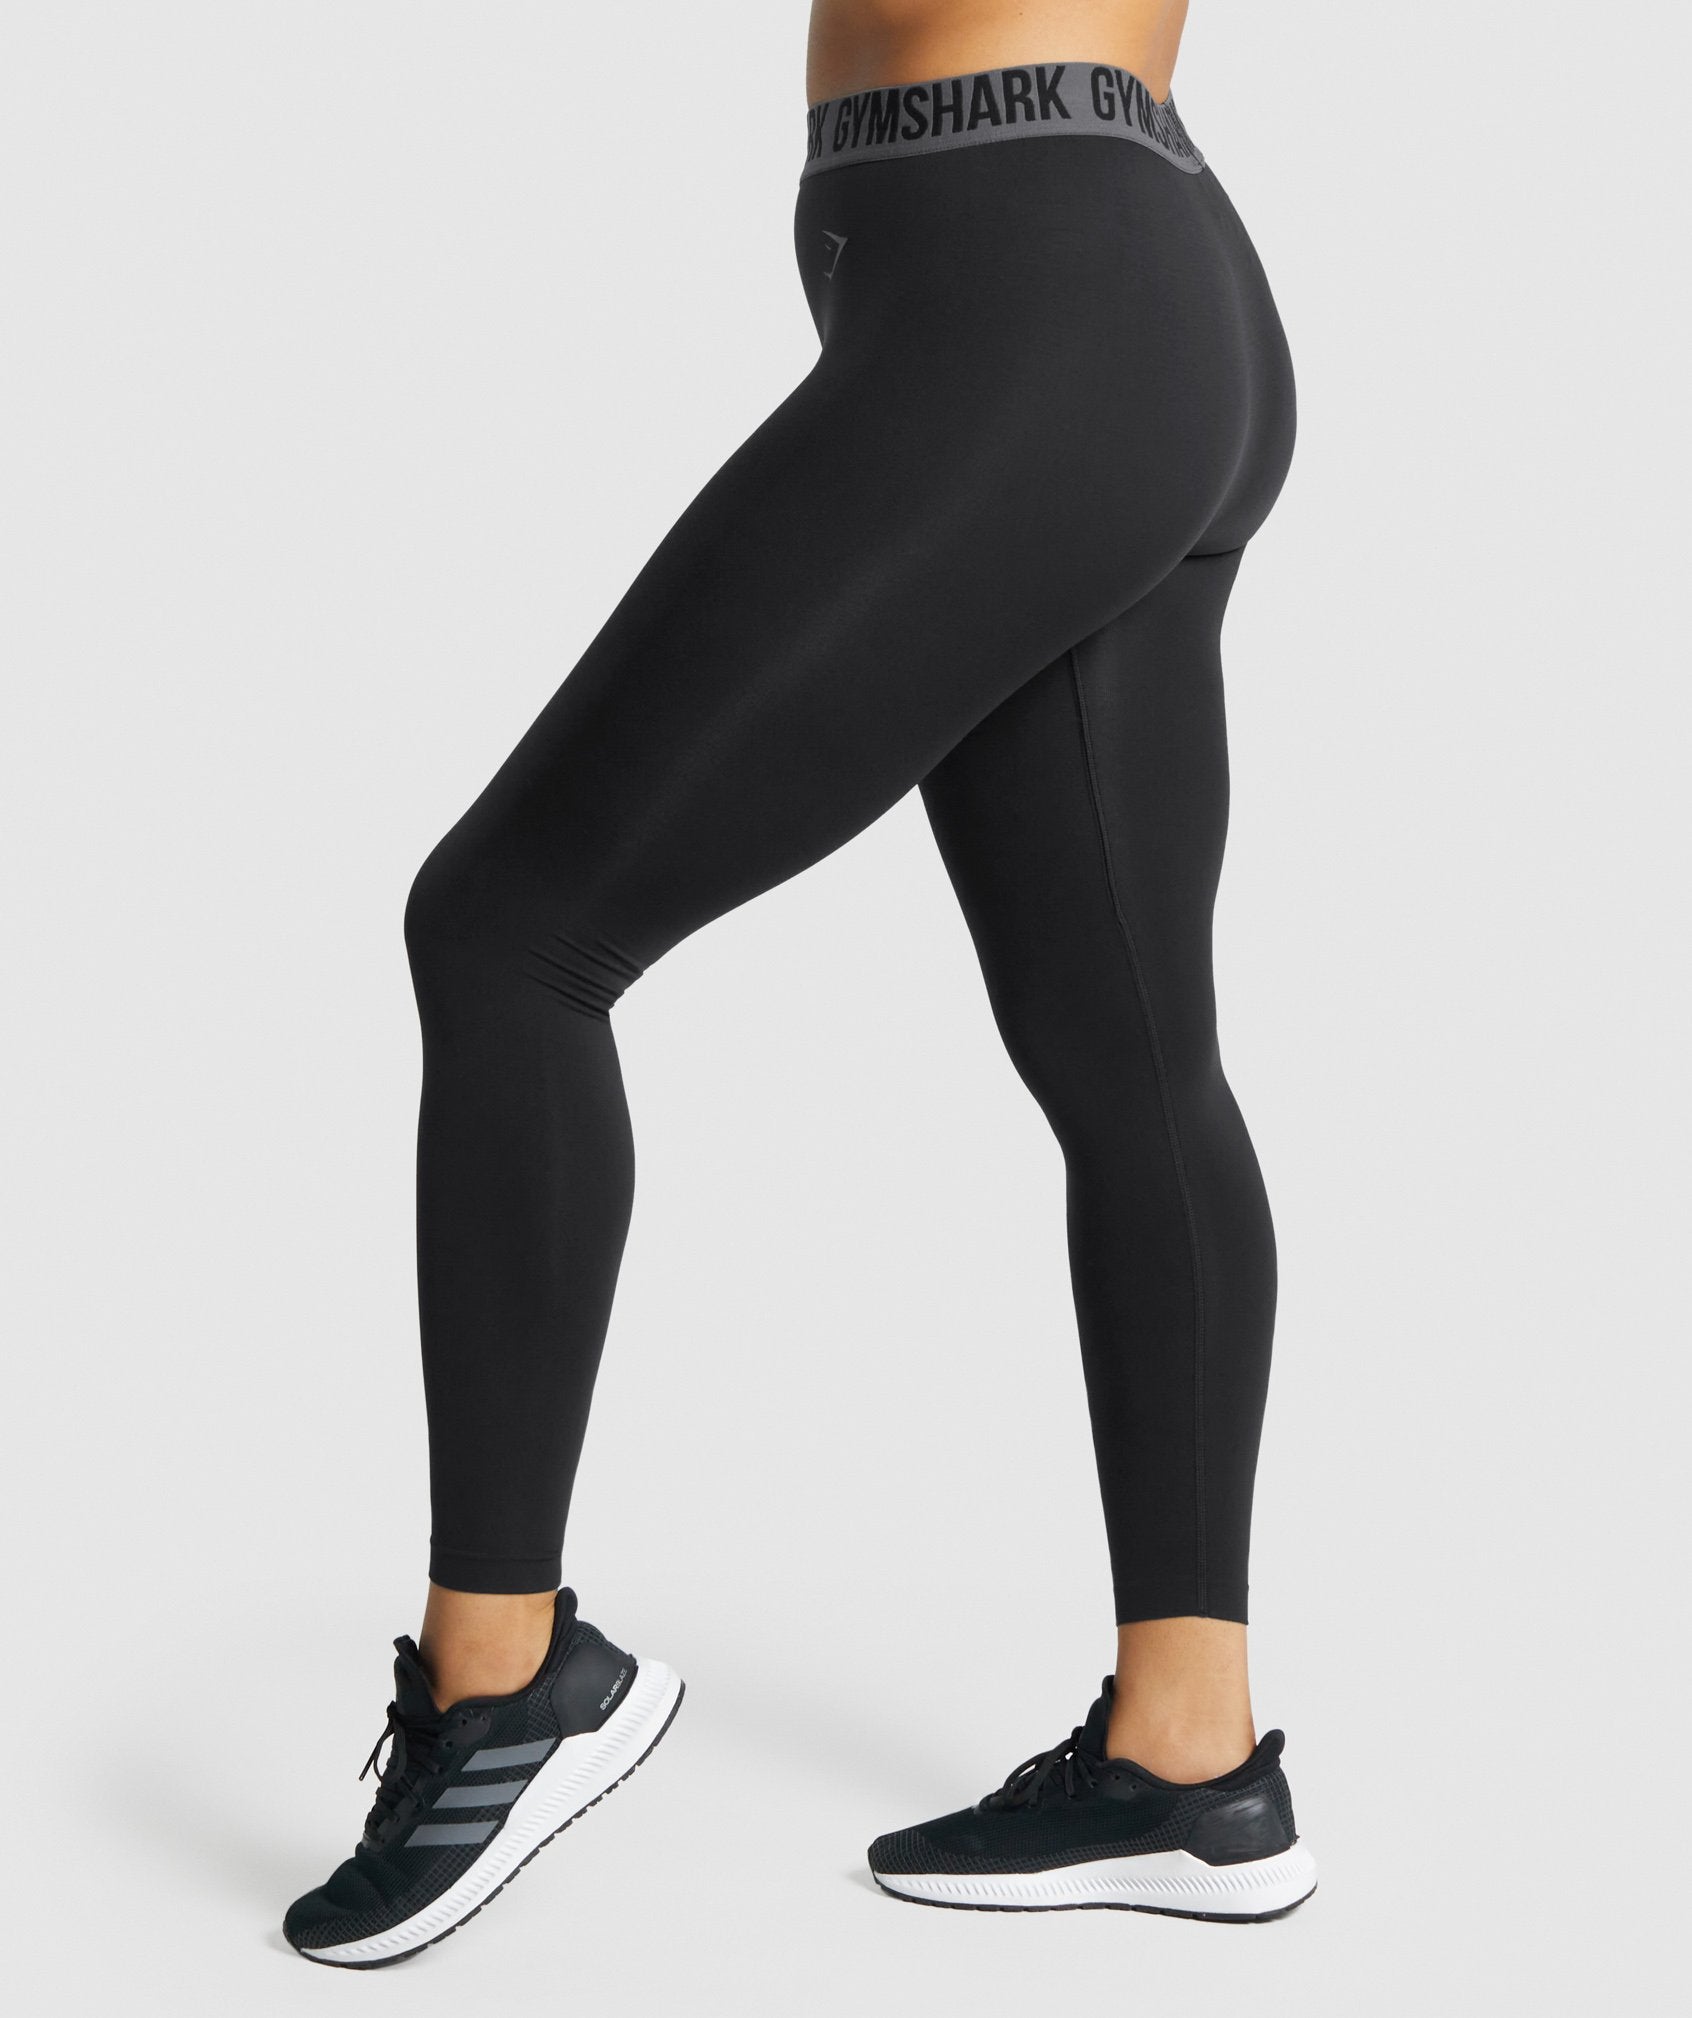 Shefit Seamless Leggings Women's Size 2 Luxe - Black